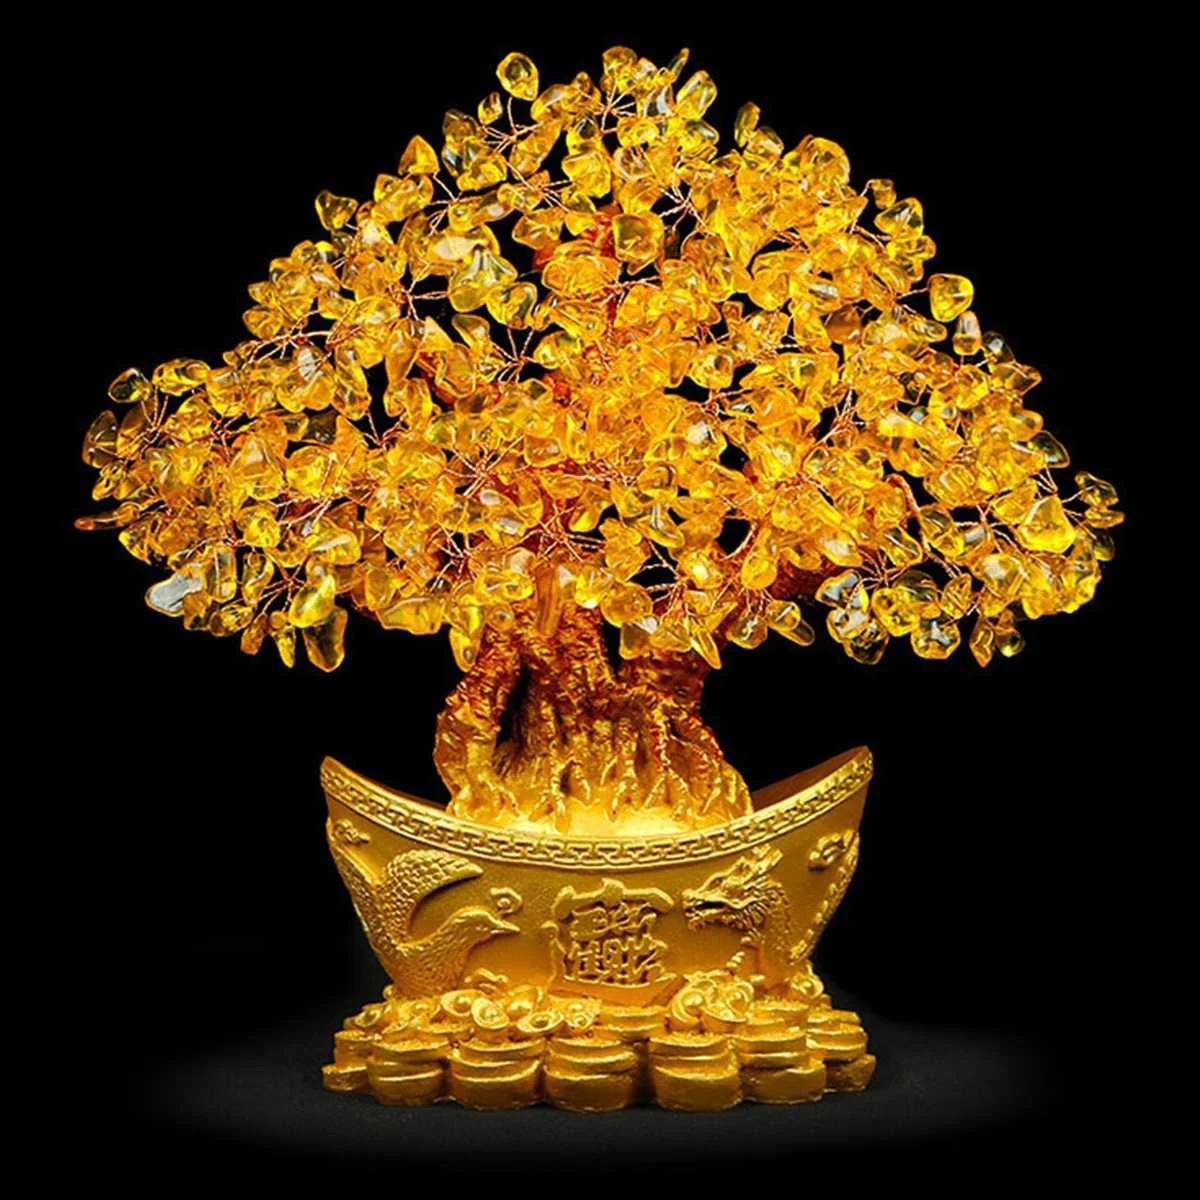 Extra grande de oro natural citrino dinero de la suerte de árbol de vaca de efectivo de los negocios de artesanía casa nueva don lingote decoración del árbol de la escultura 4